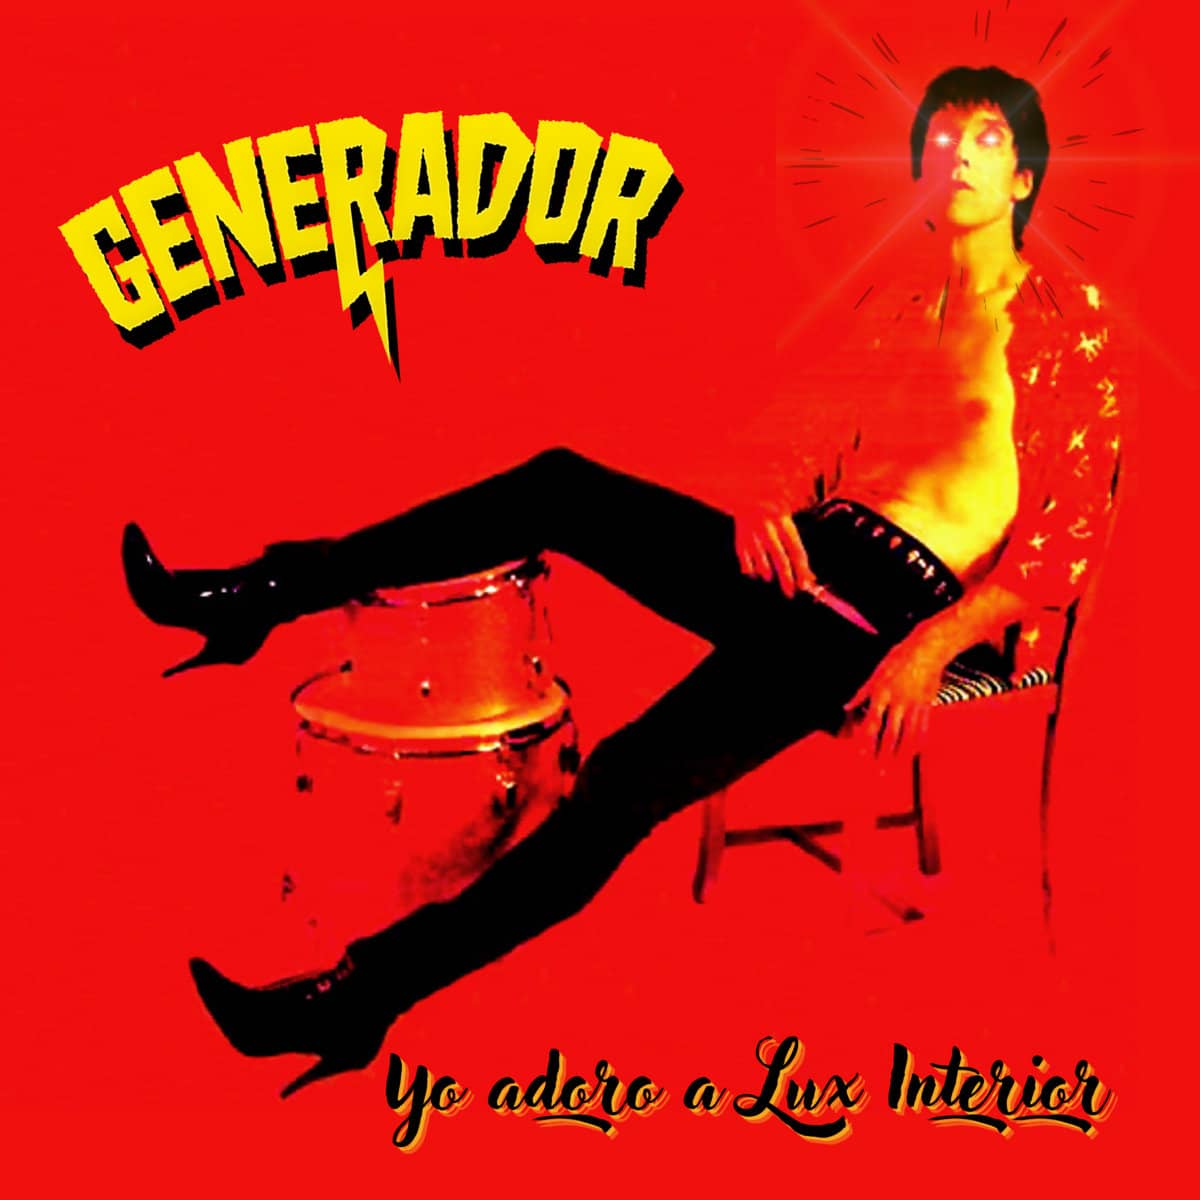 Generador presentan el "1er Single Adelanto" de su proximo LP